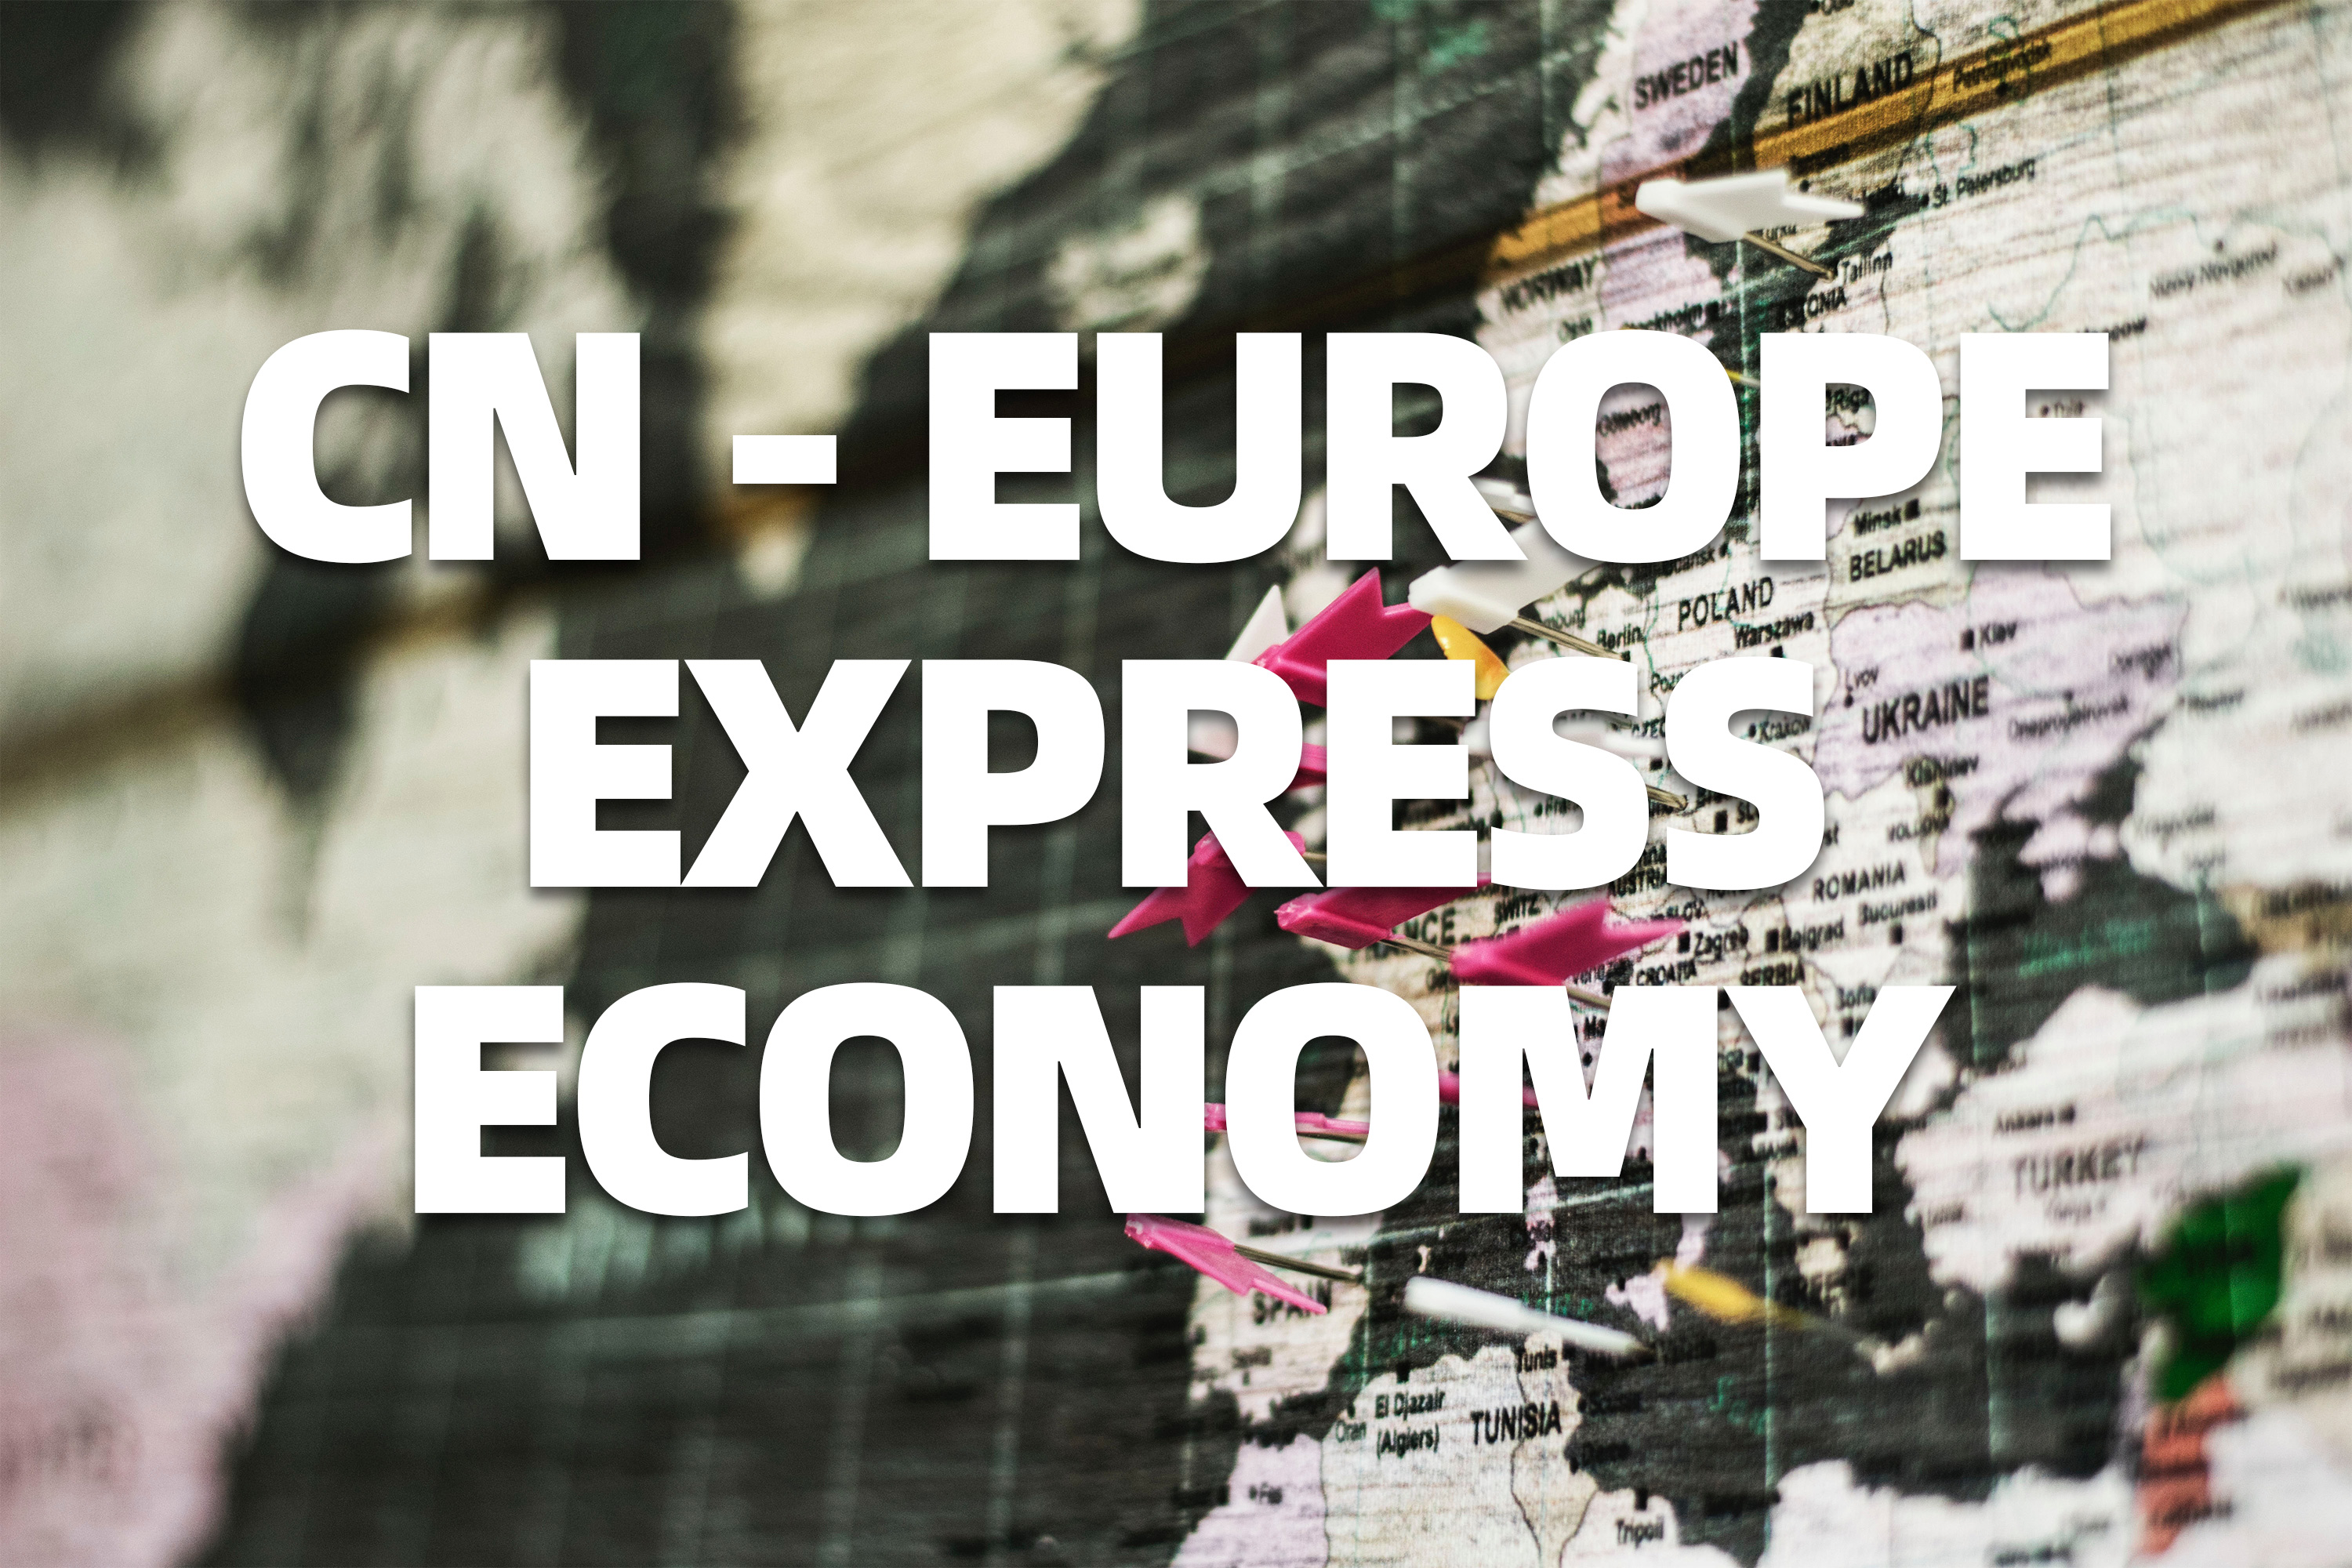 China-europe express economy